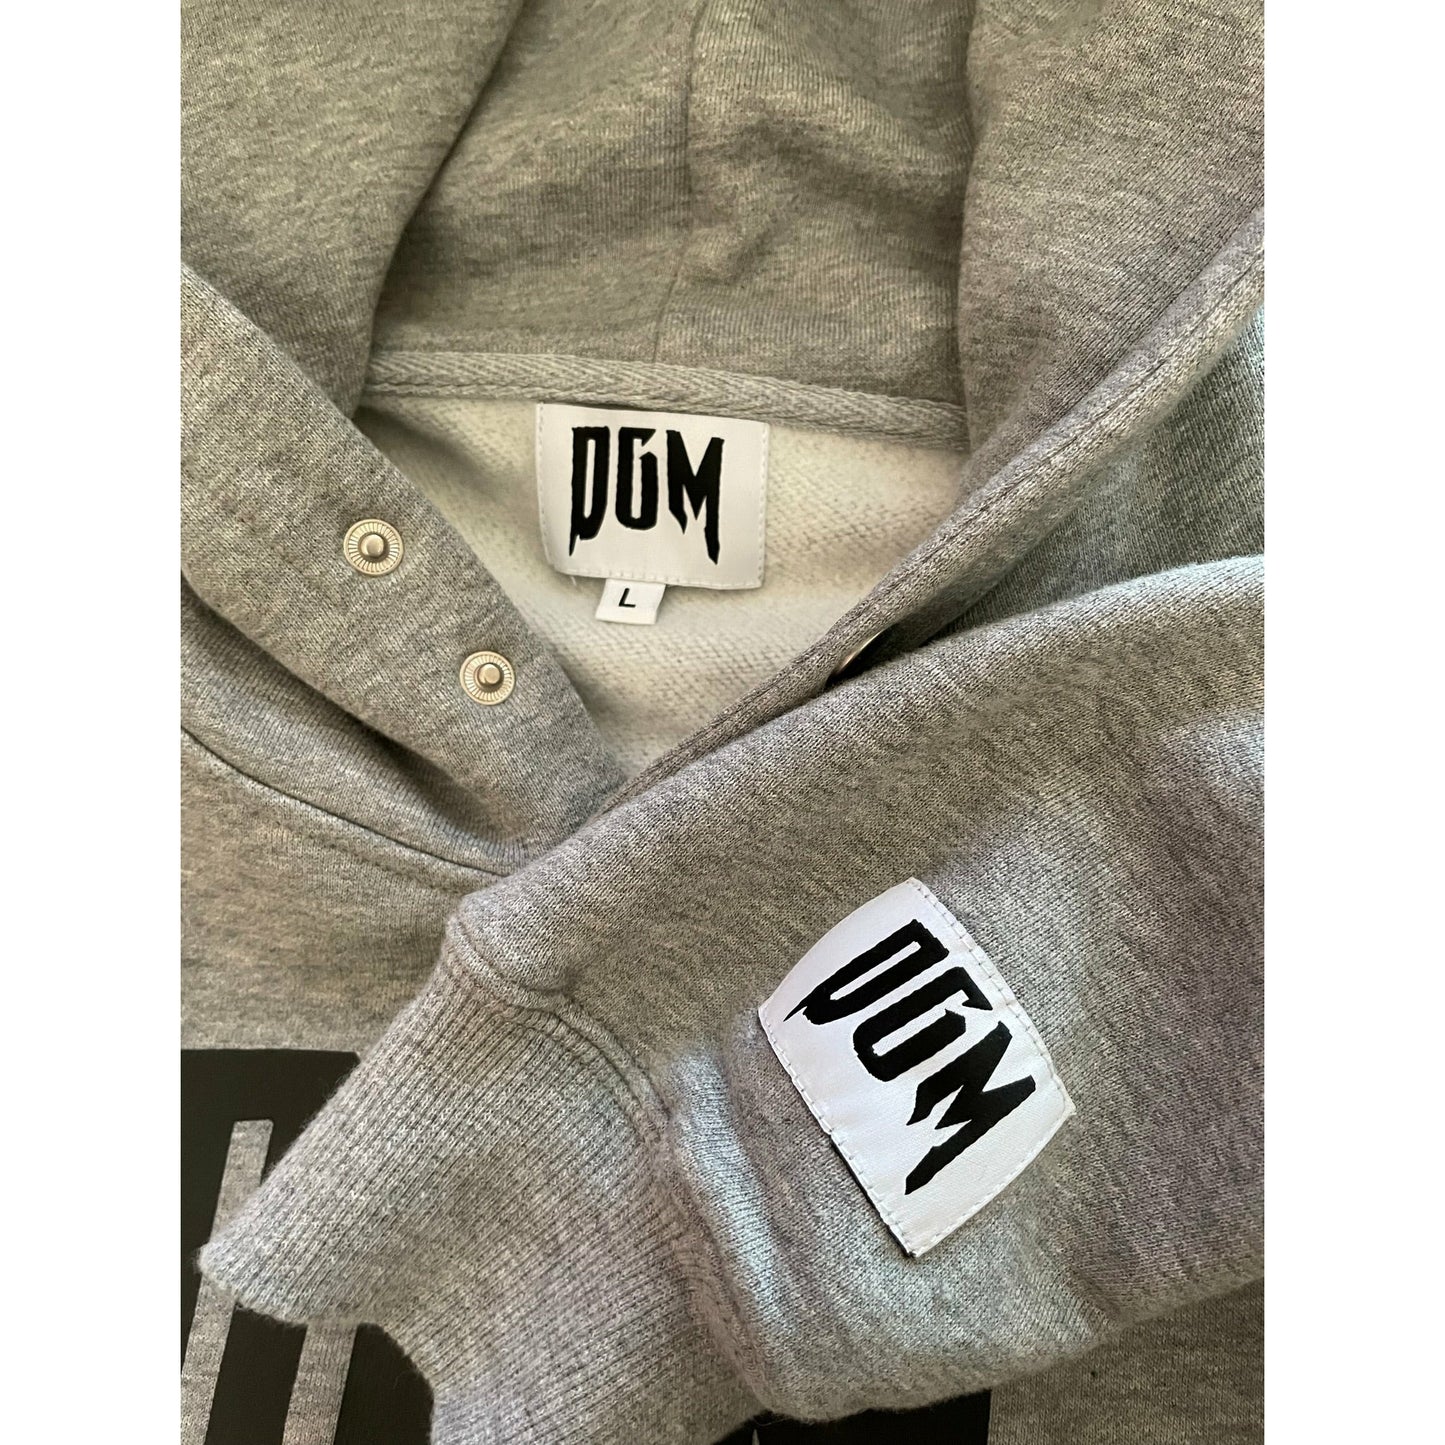 DGM hoodie (grey)